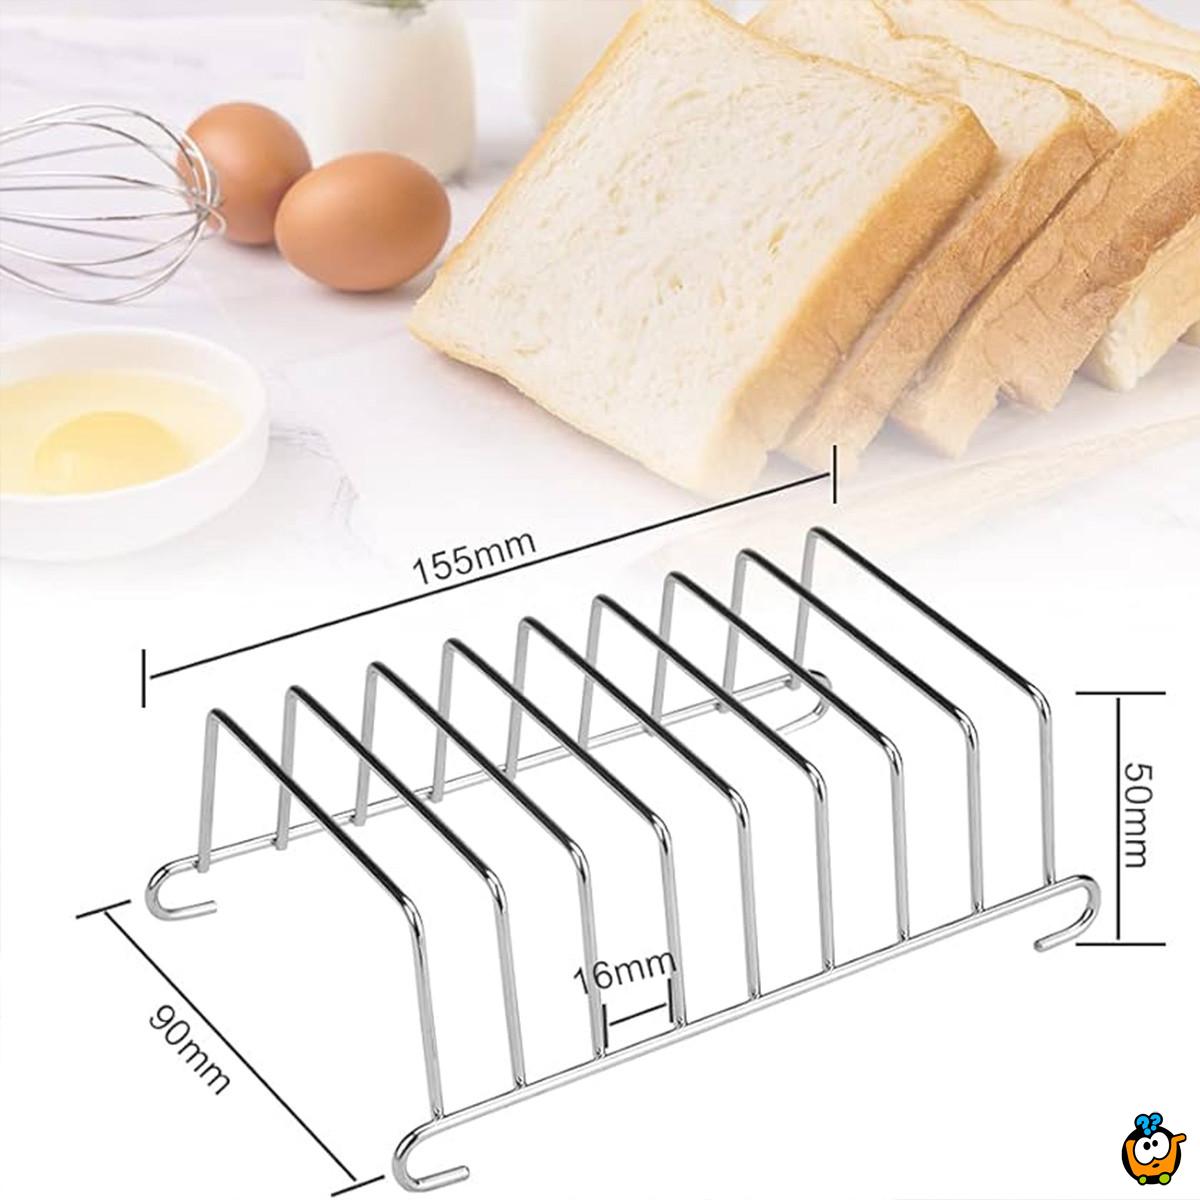 Toast Rack - metalni stalak za tostiranje hleba